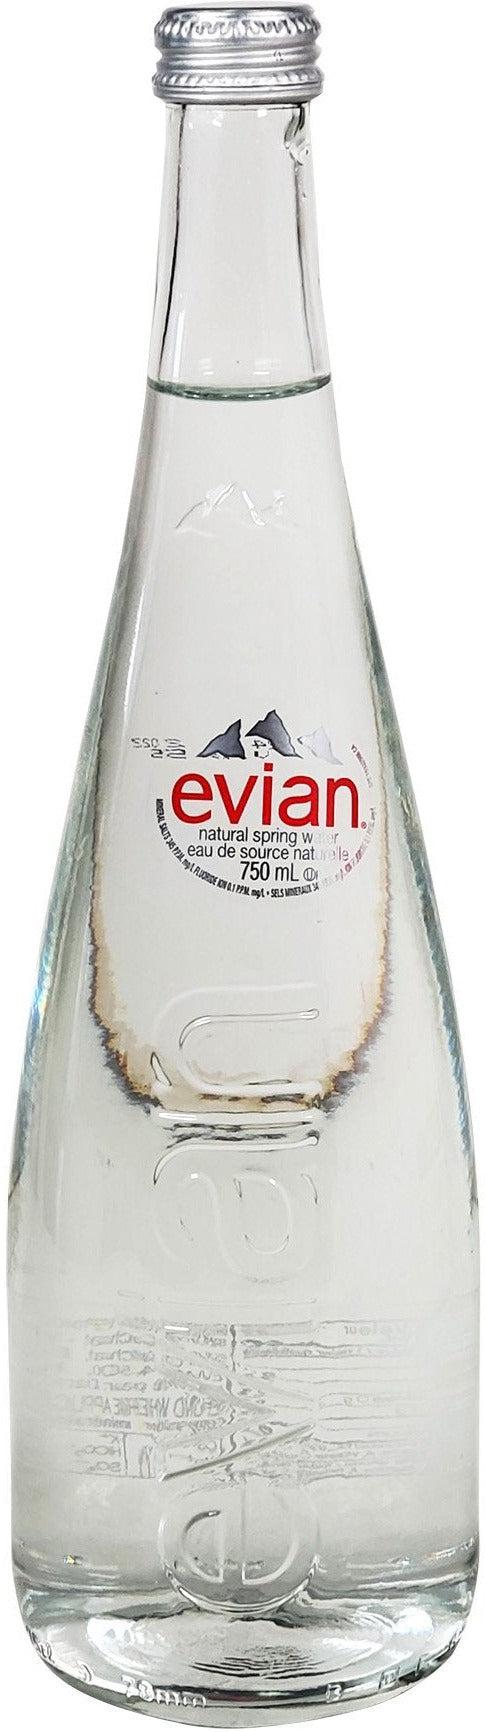 Evian Water Glass Bottles